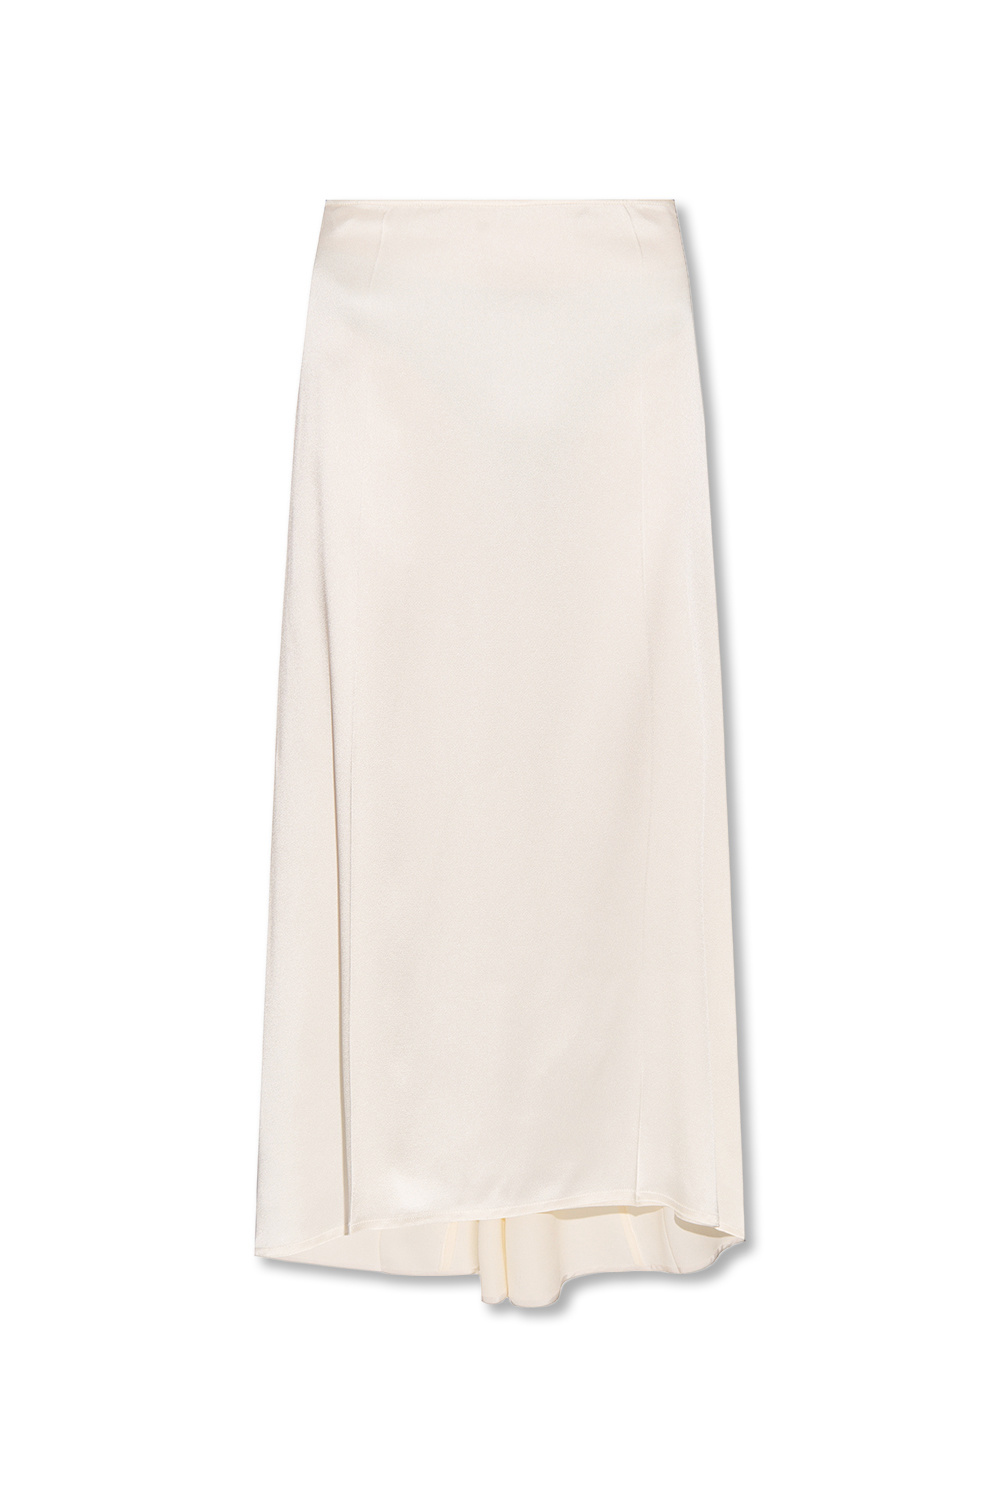 Victoria Beckham Asymmetrical skirt